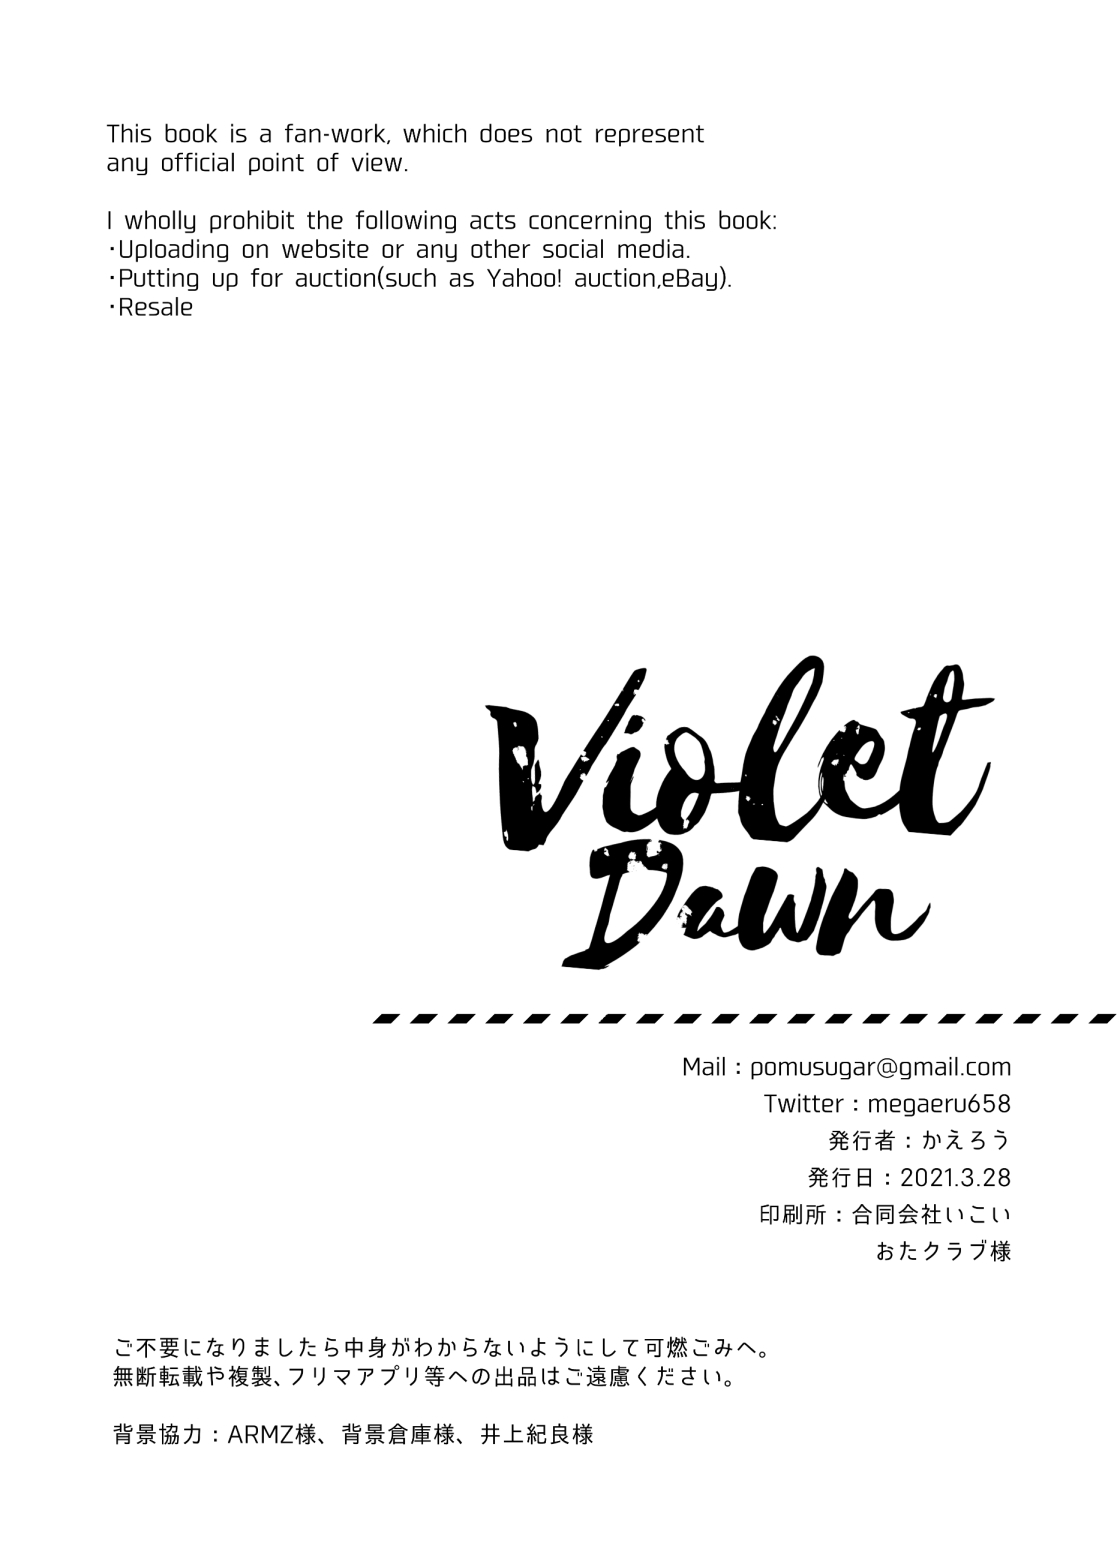 [かえろう] Violet Dawn (スプラトゥーン)